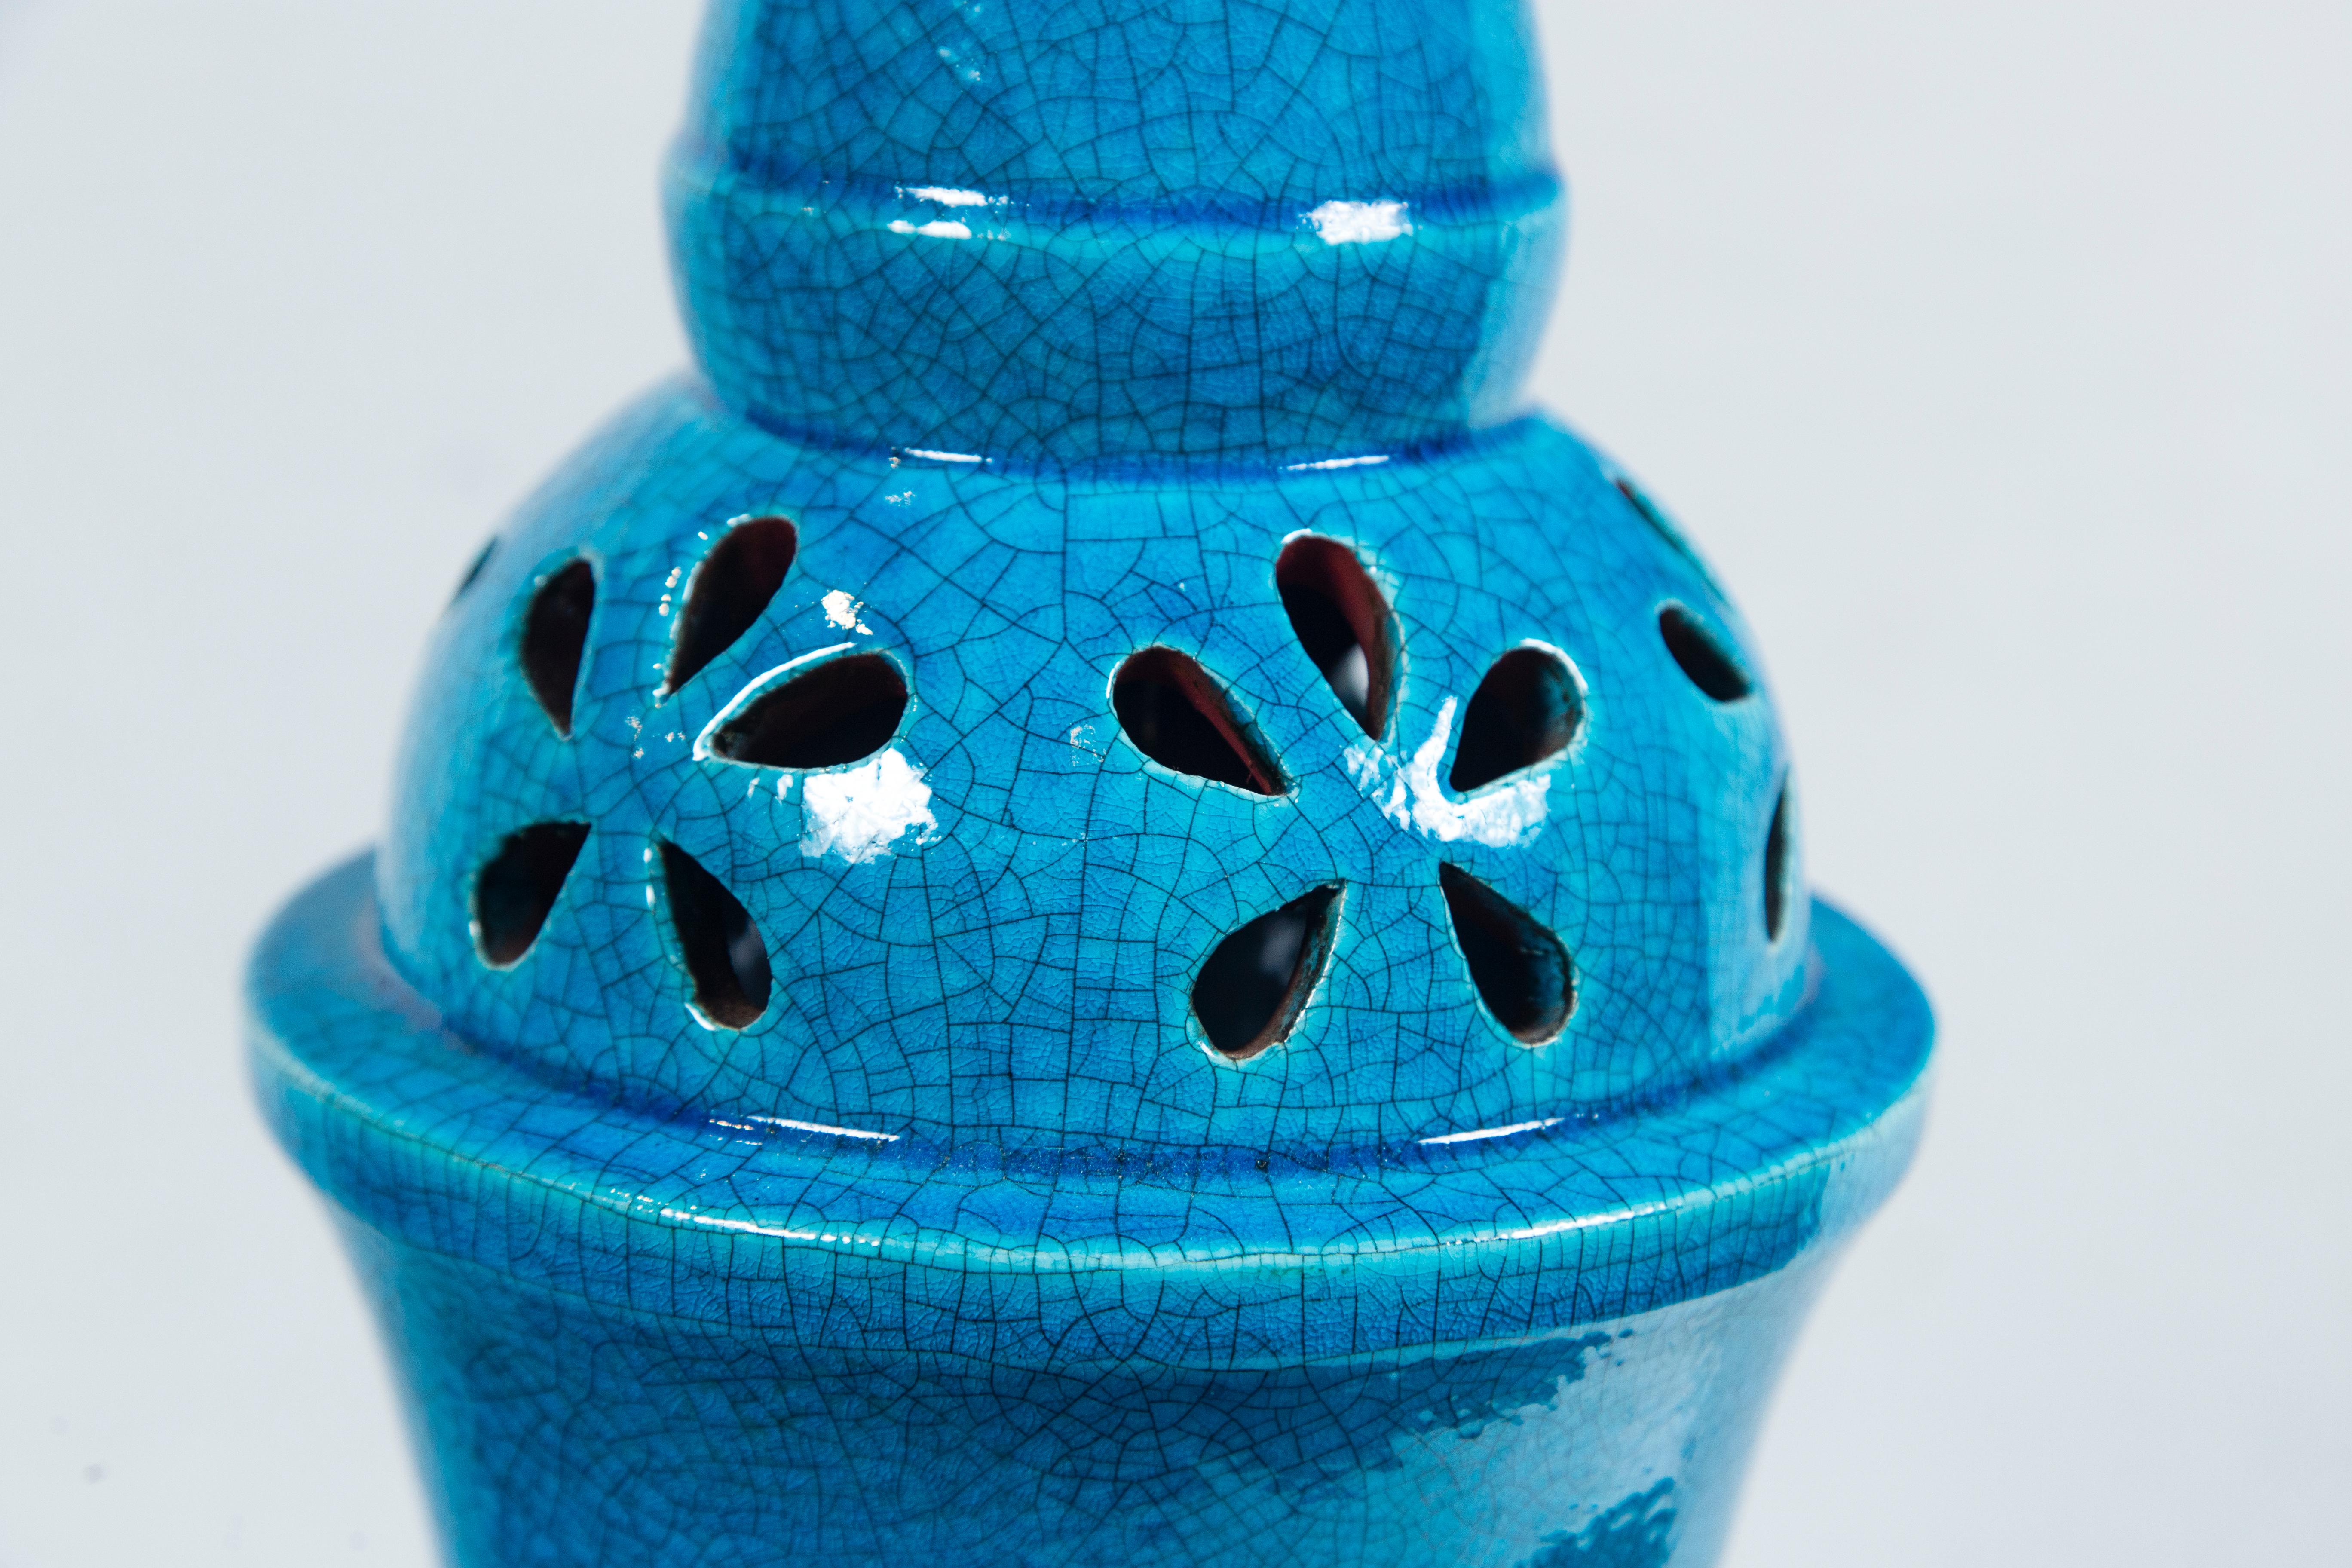 Grande lampe italienne en céramique exotique turquoise à glaçage craquelé. Un look mauresque avec une inclinaison flower power. La base est en bois peint, d'un diamètre de 8 pouces. Cordon transparent. Matériel de qualité. Deux prises de taille